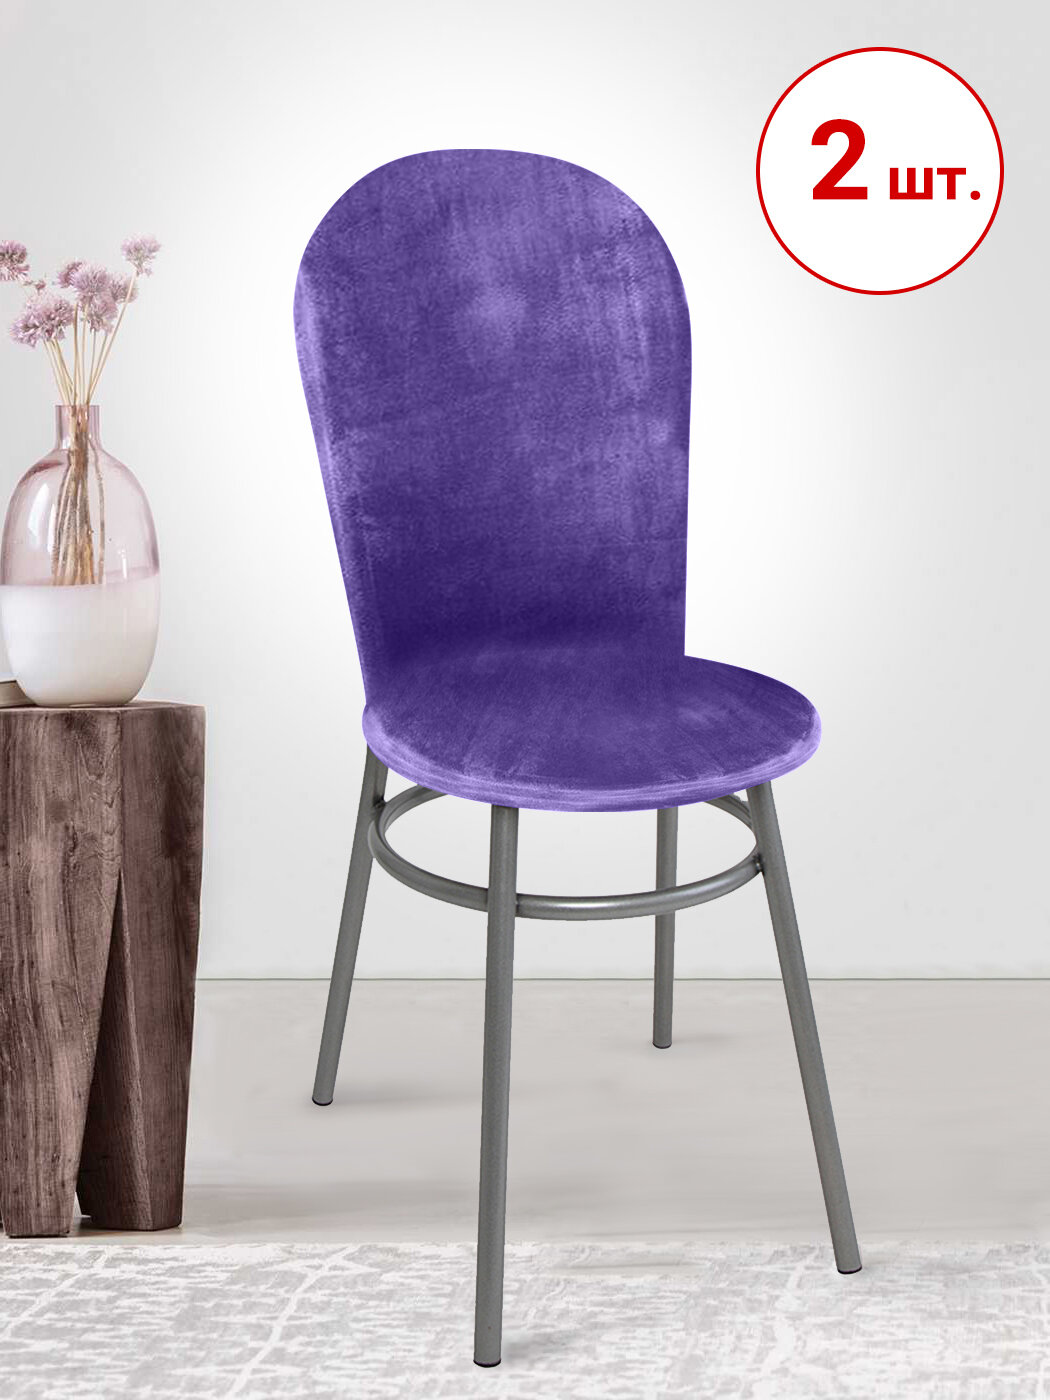 Набор из 2-х чехлов на венские стулья с округлым сиденьем Бруклин фиолетовый